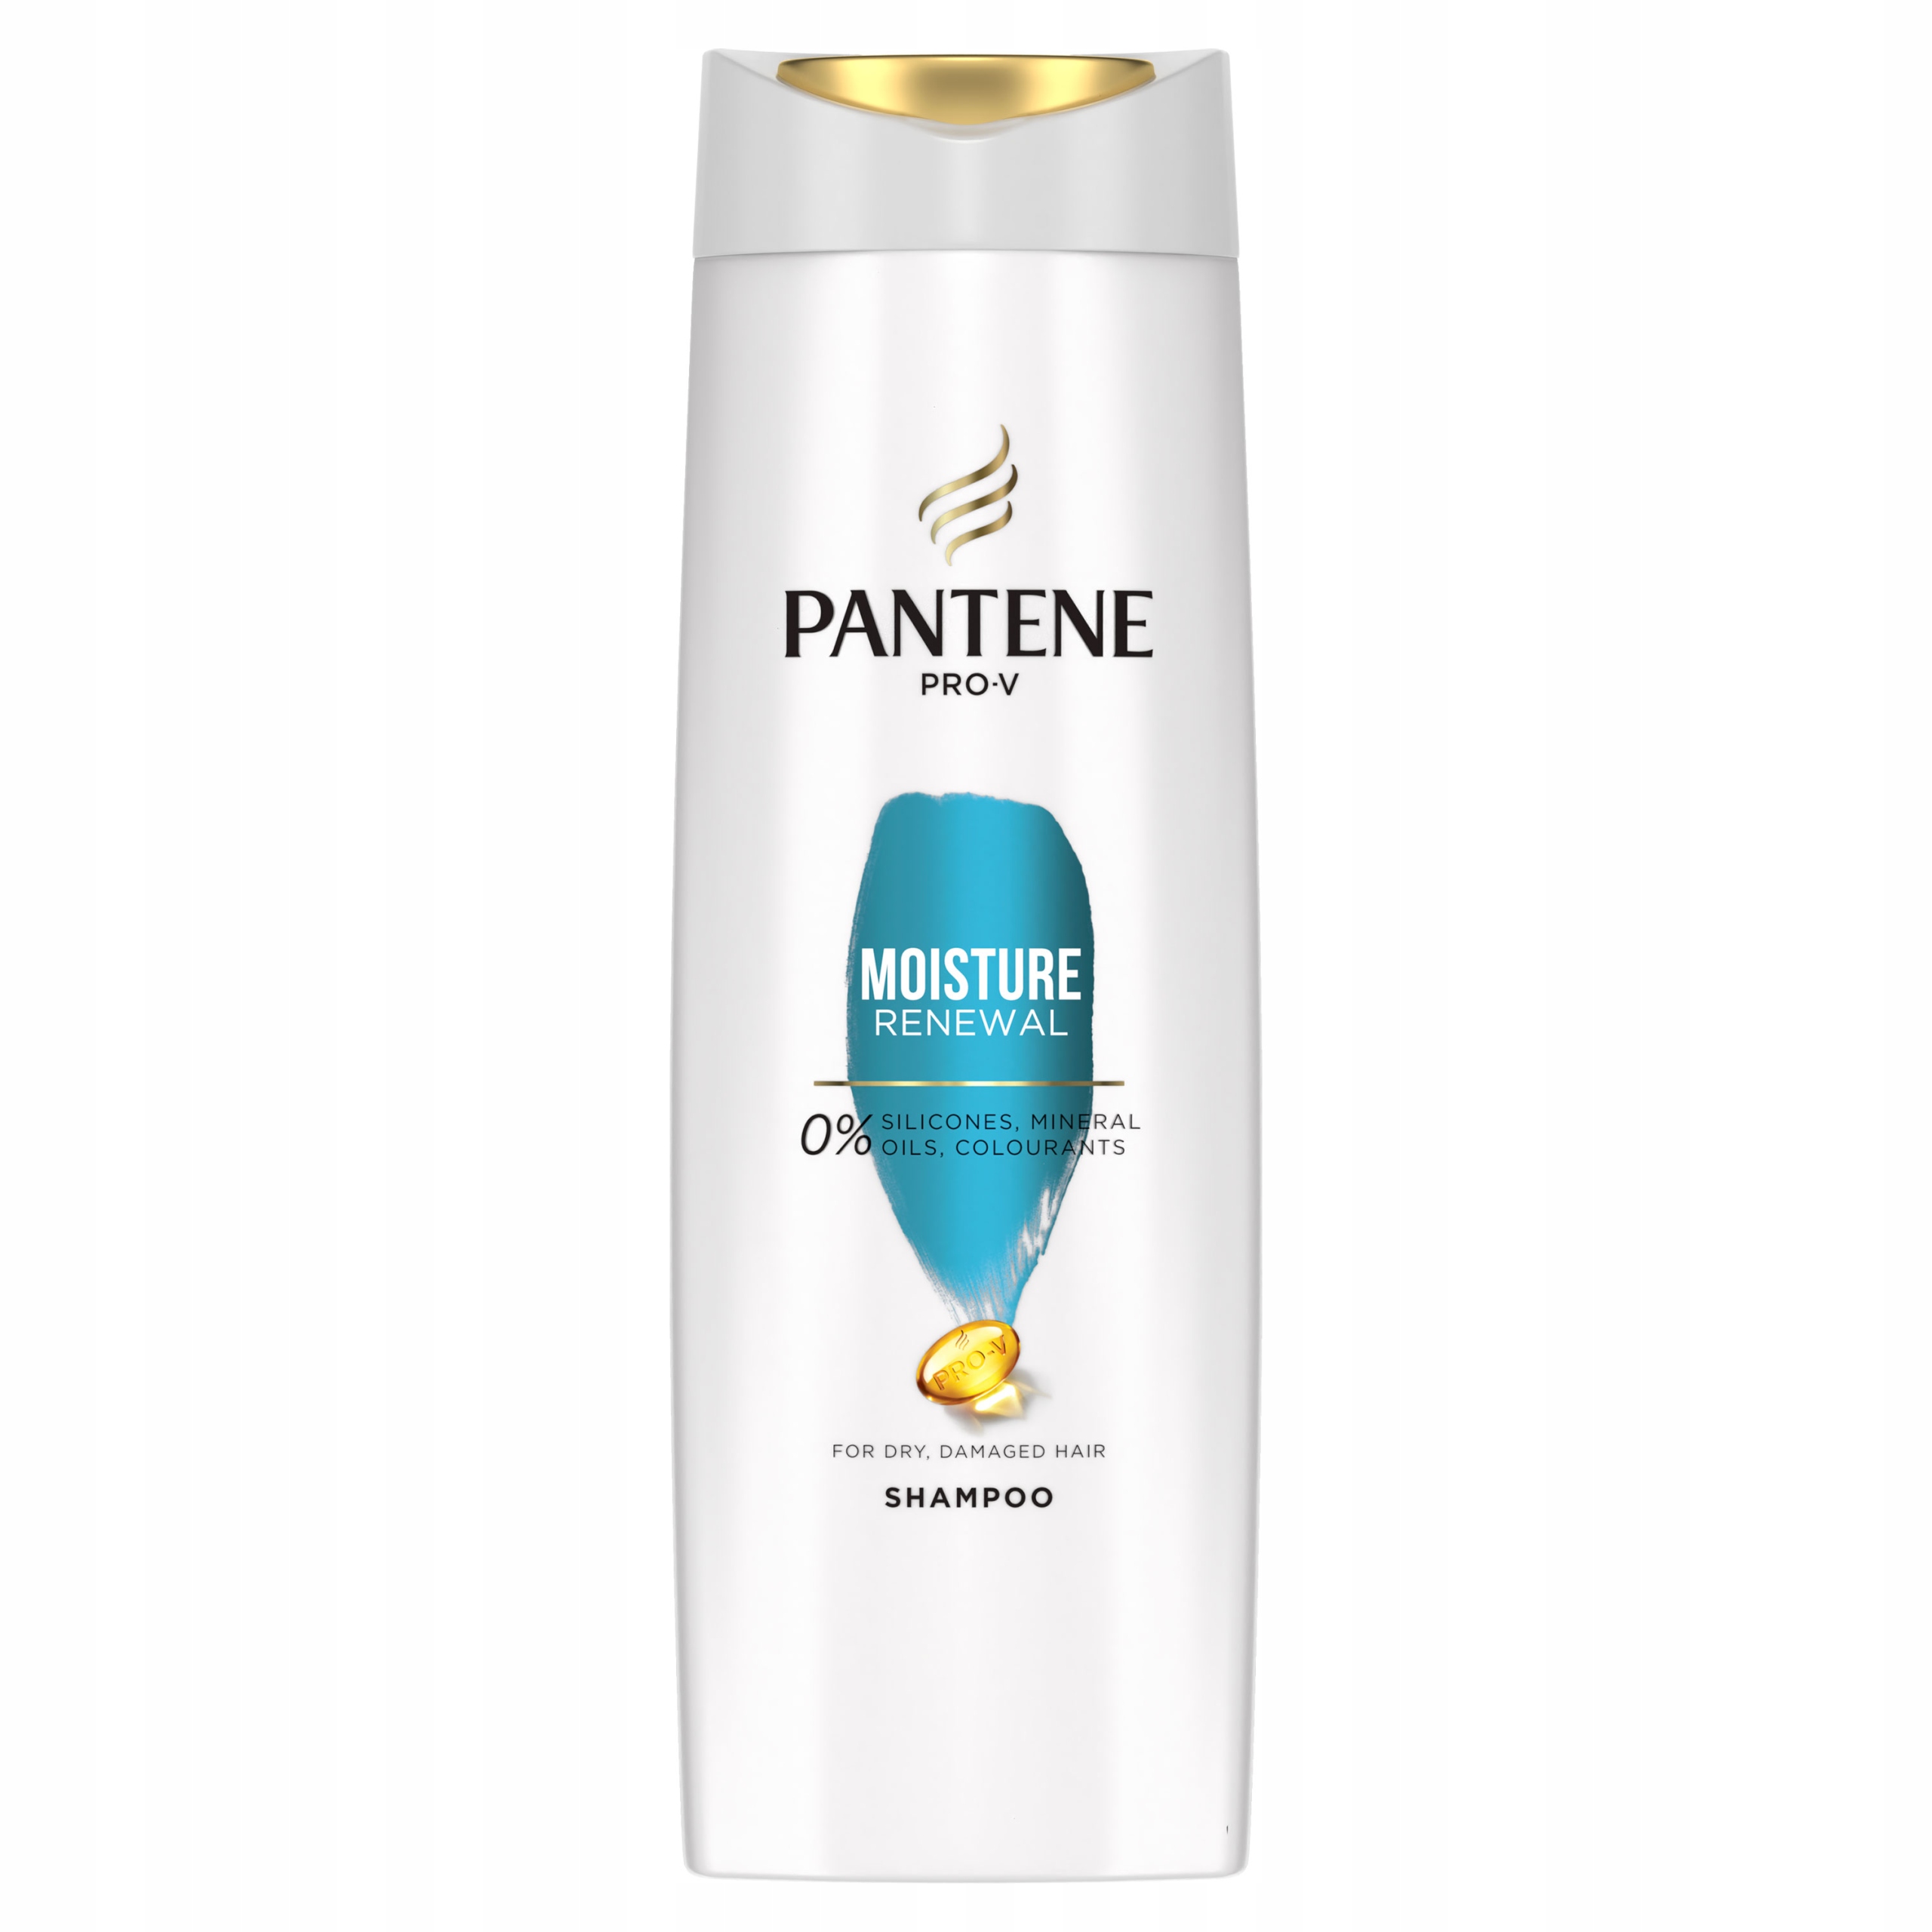 szampon pantene moisture opinie